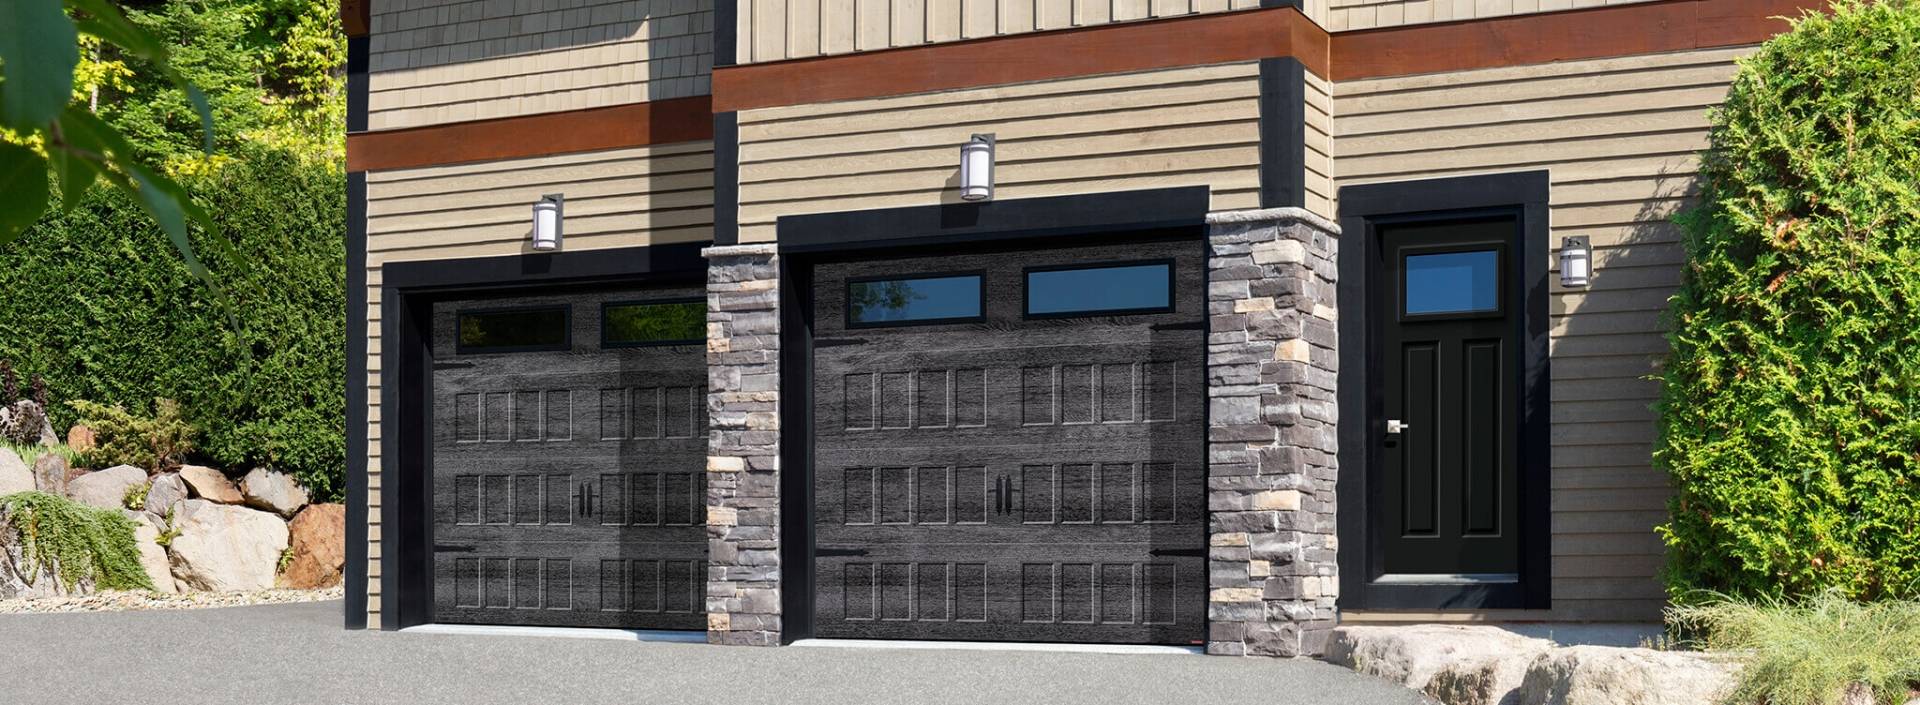 Garage Door Openers In Des Moines, Garage Door Replacement Des Moines